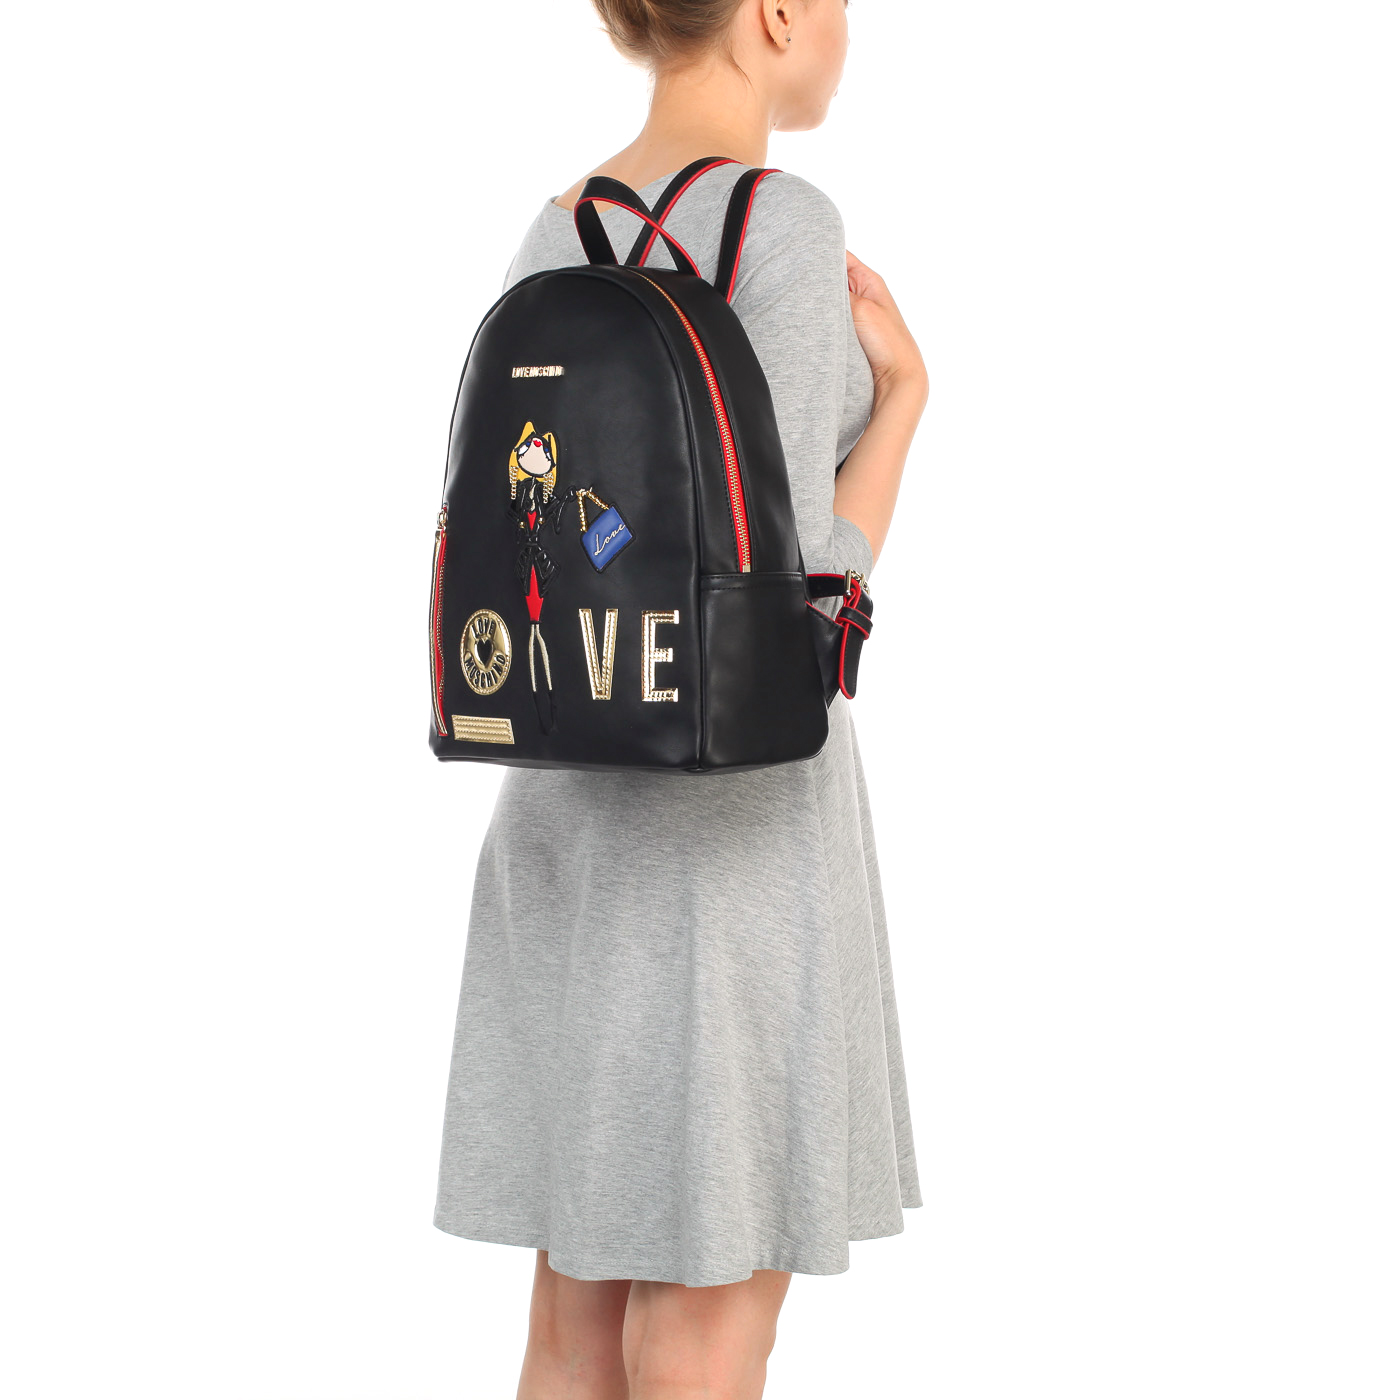 Вместительный женский рюкзак черного цвета с аппликацией Love Moschino Charming bag